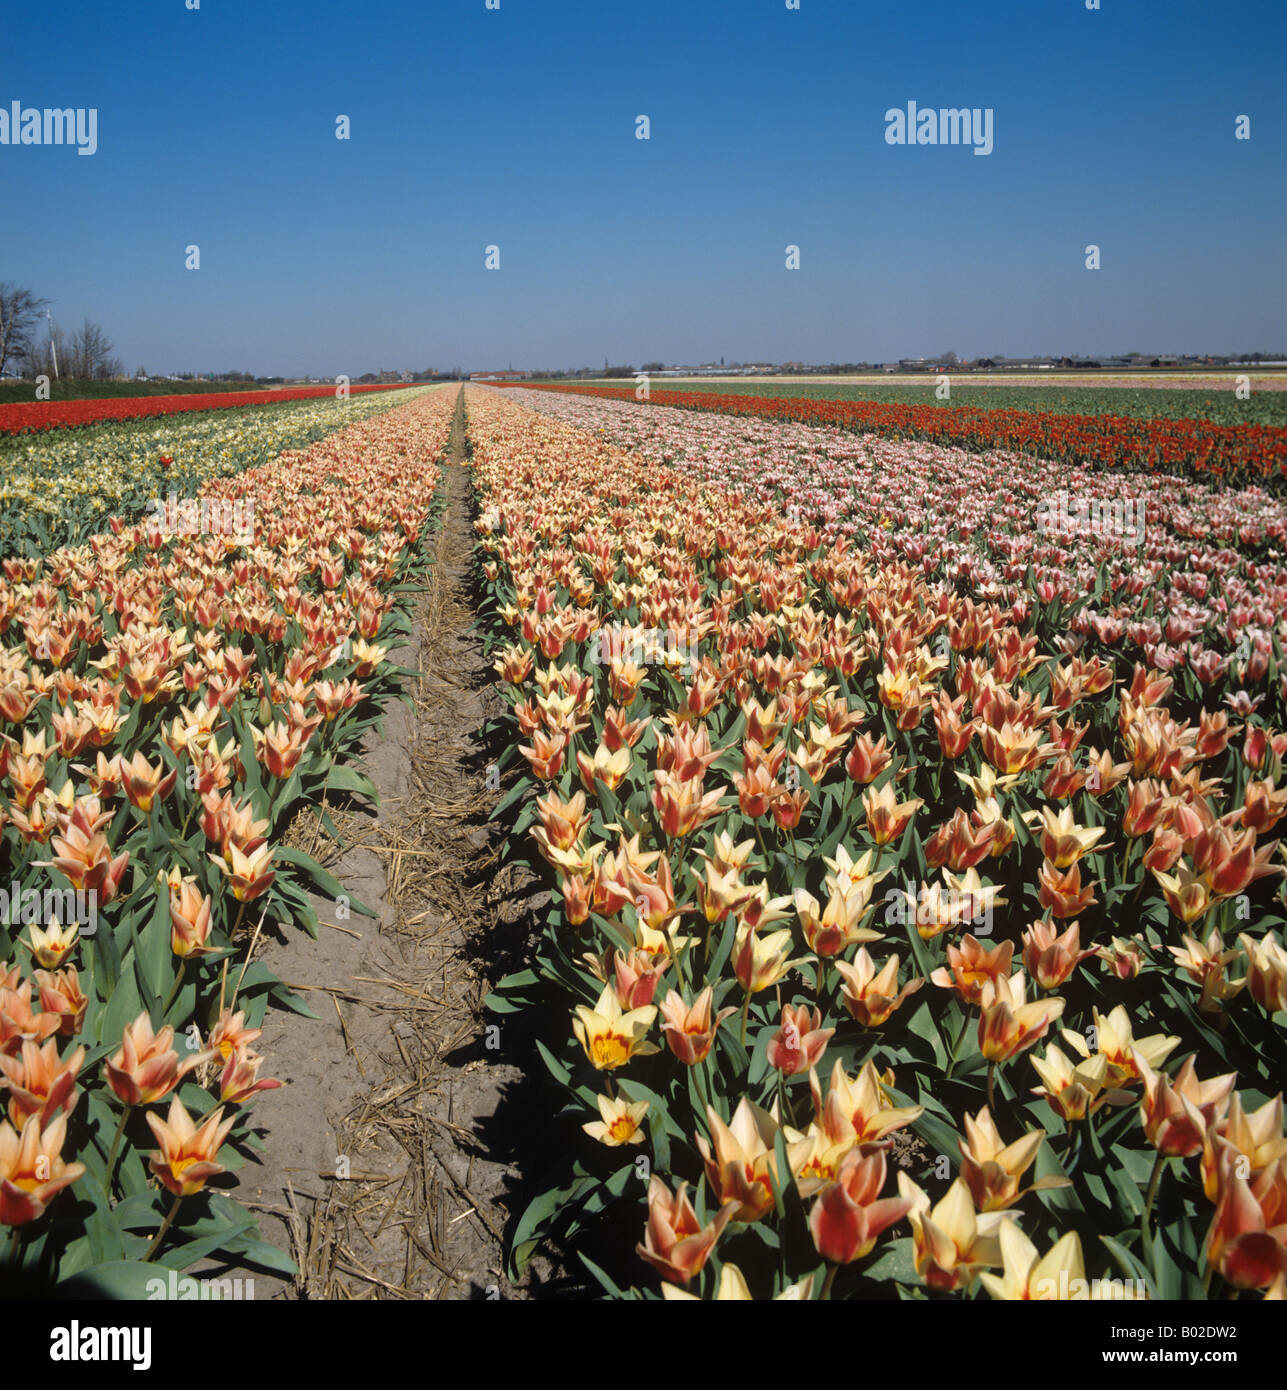 Ampoule néerlandais champ avec la floraison des tulipes multicolores Pays-bas miniature Banque D'Images